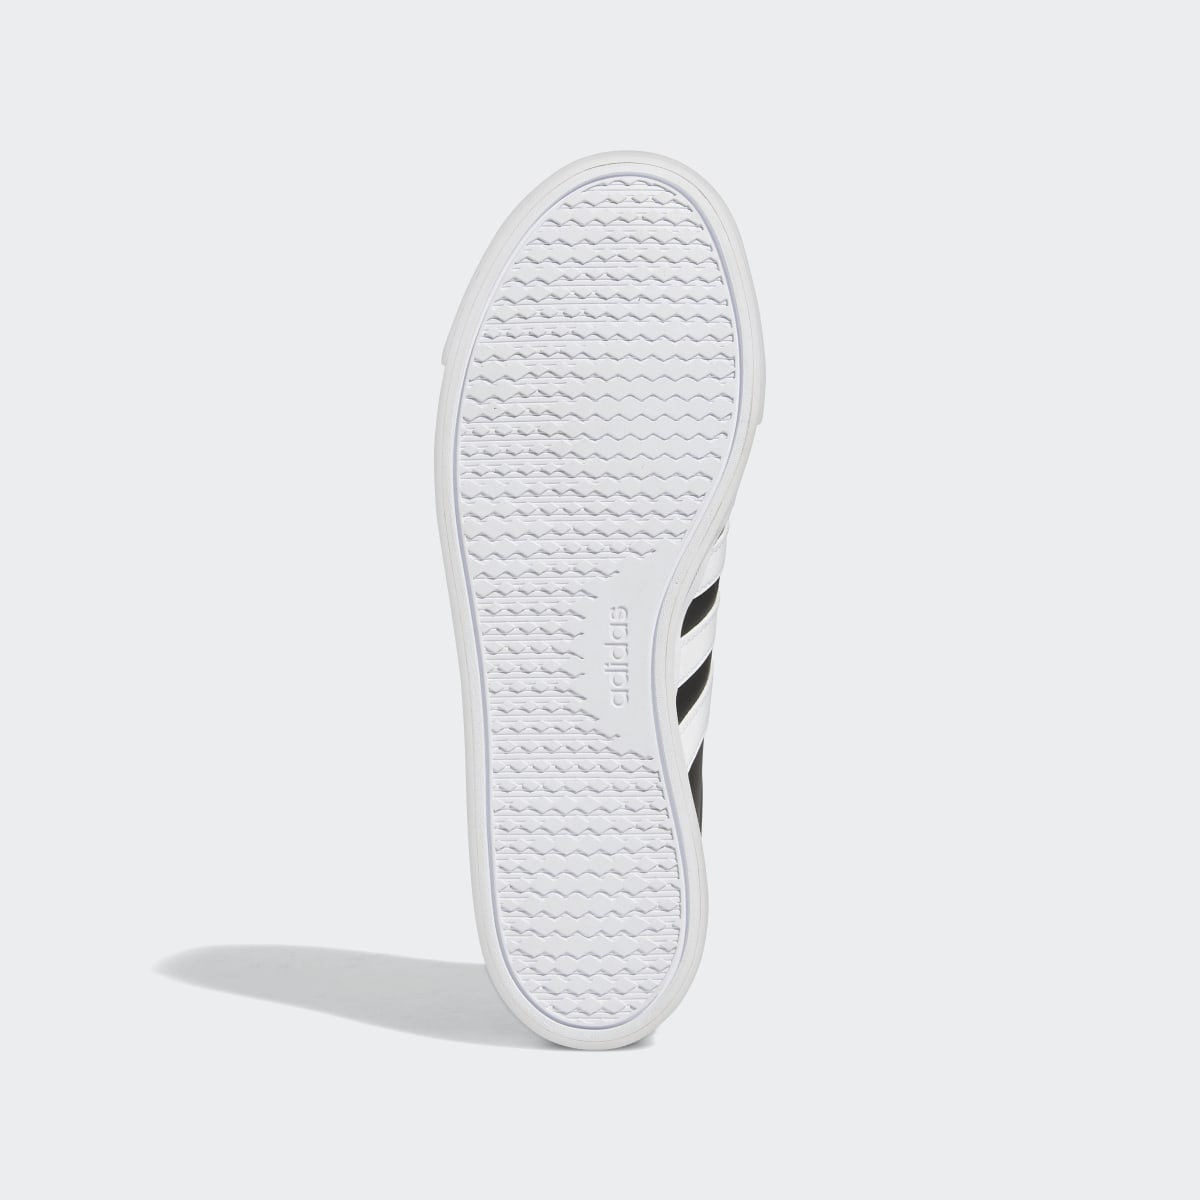 Adidas Retrovulc Lifestyle Kaykay Ayakkabısı. 4